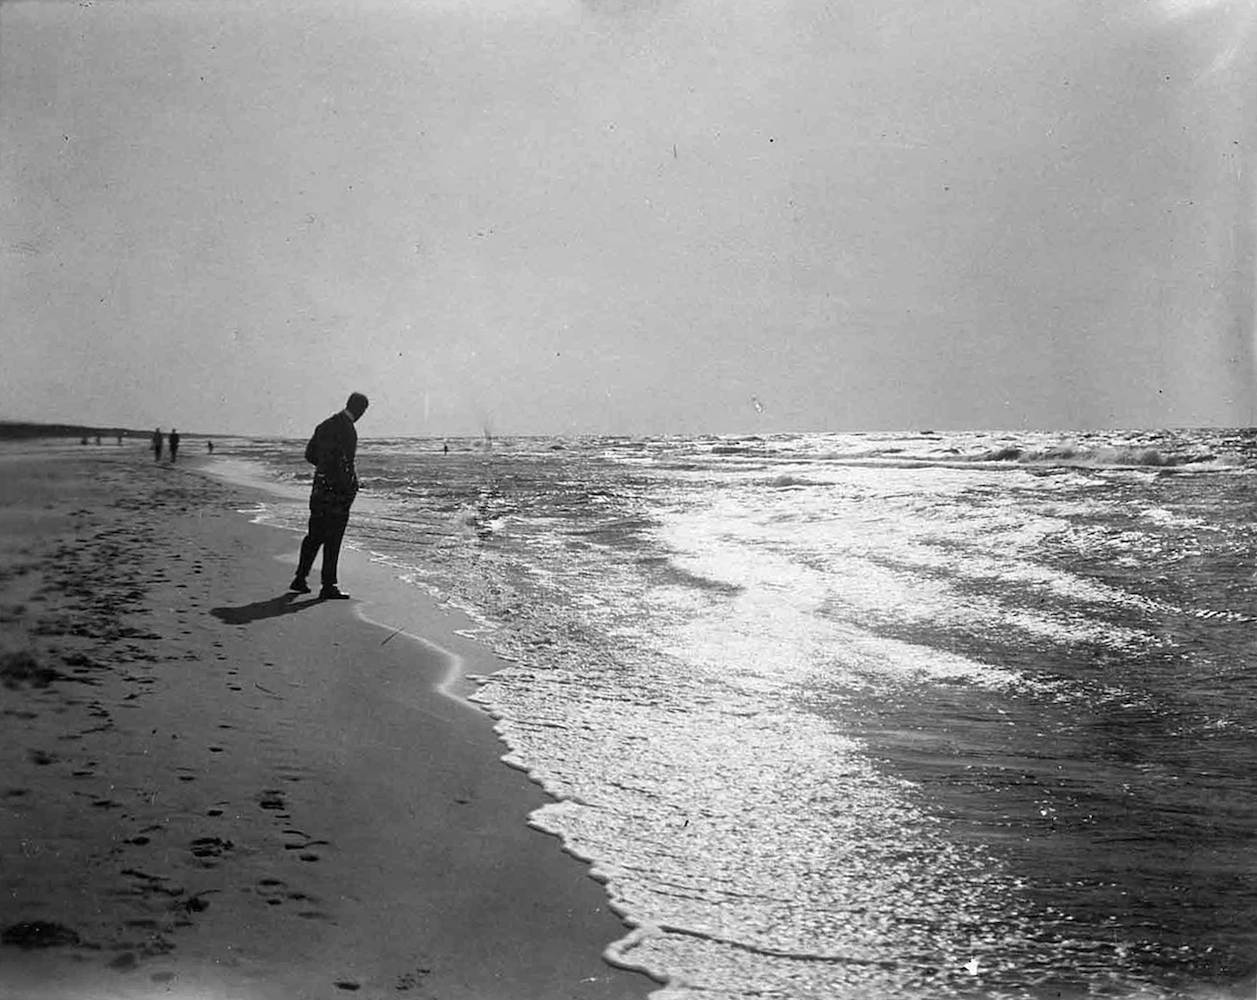 Lyonel Feininger on the Beach in Deep